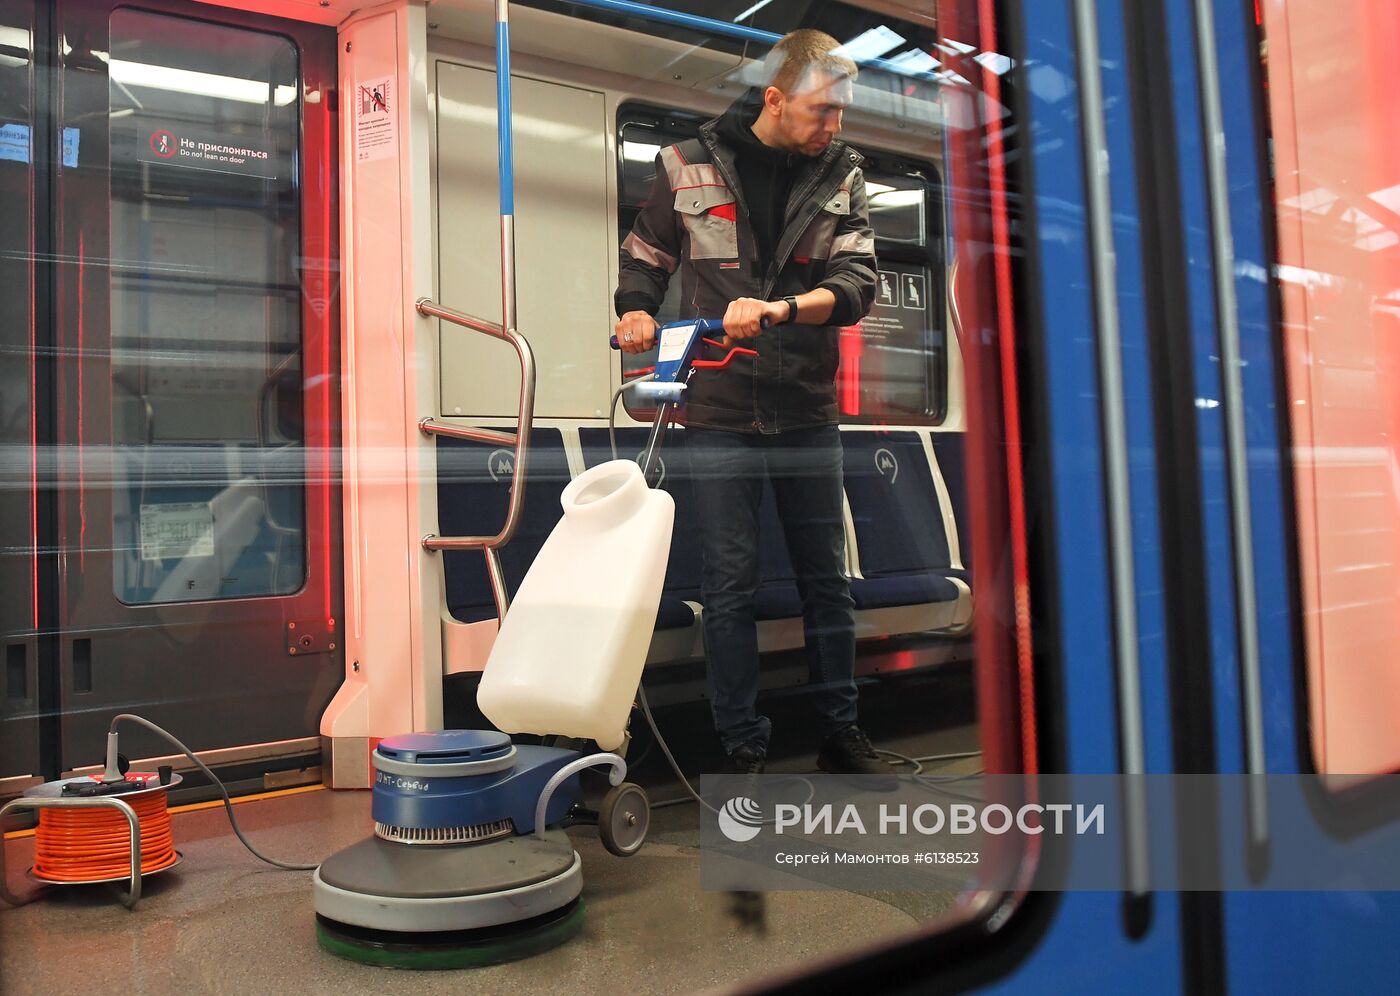 Процесс уборки и дезинфекции поездов Московского метро